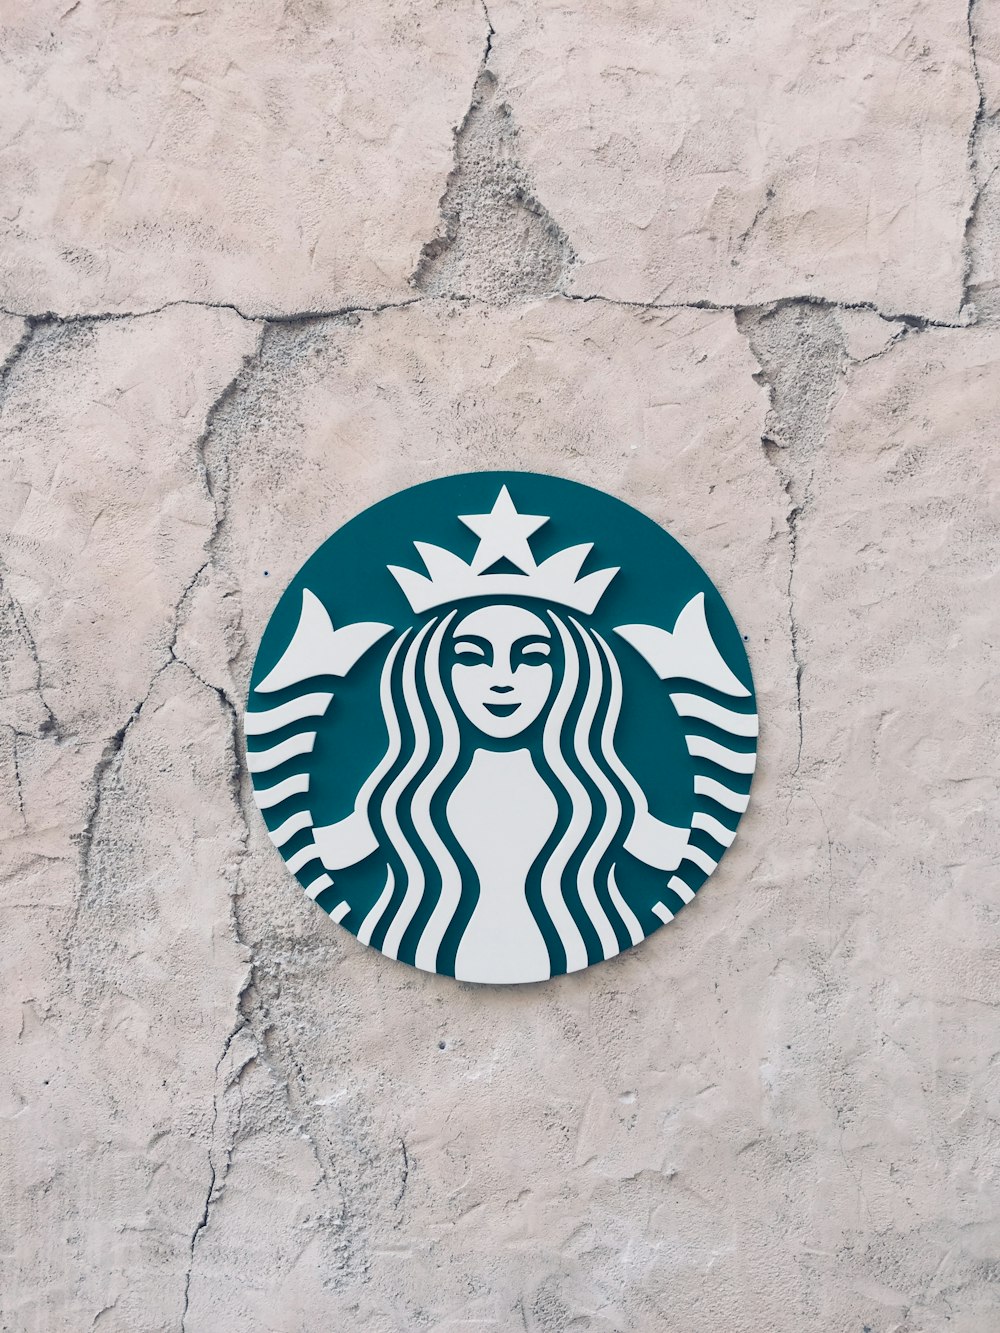 Starbucks Wallpapers: Free HD Download [500+ HQ] | Unsplash